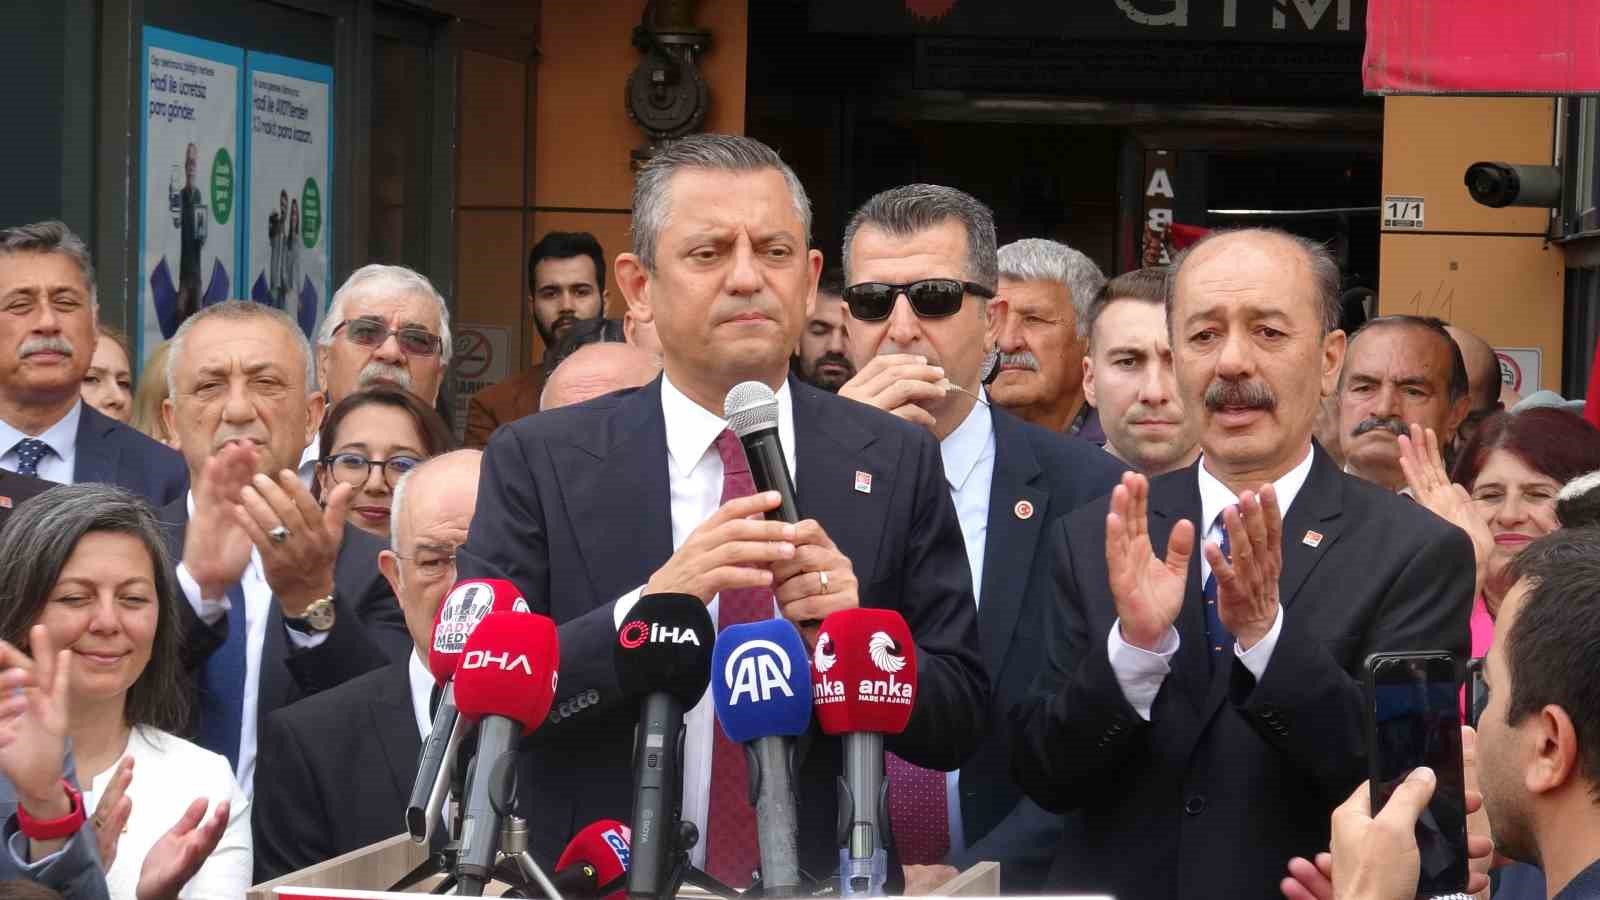 CHP Genel Başkanı Özgür Özel: "Kim hakkını arıyorsa yanında olacağız"
